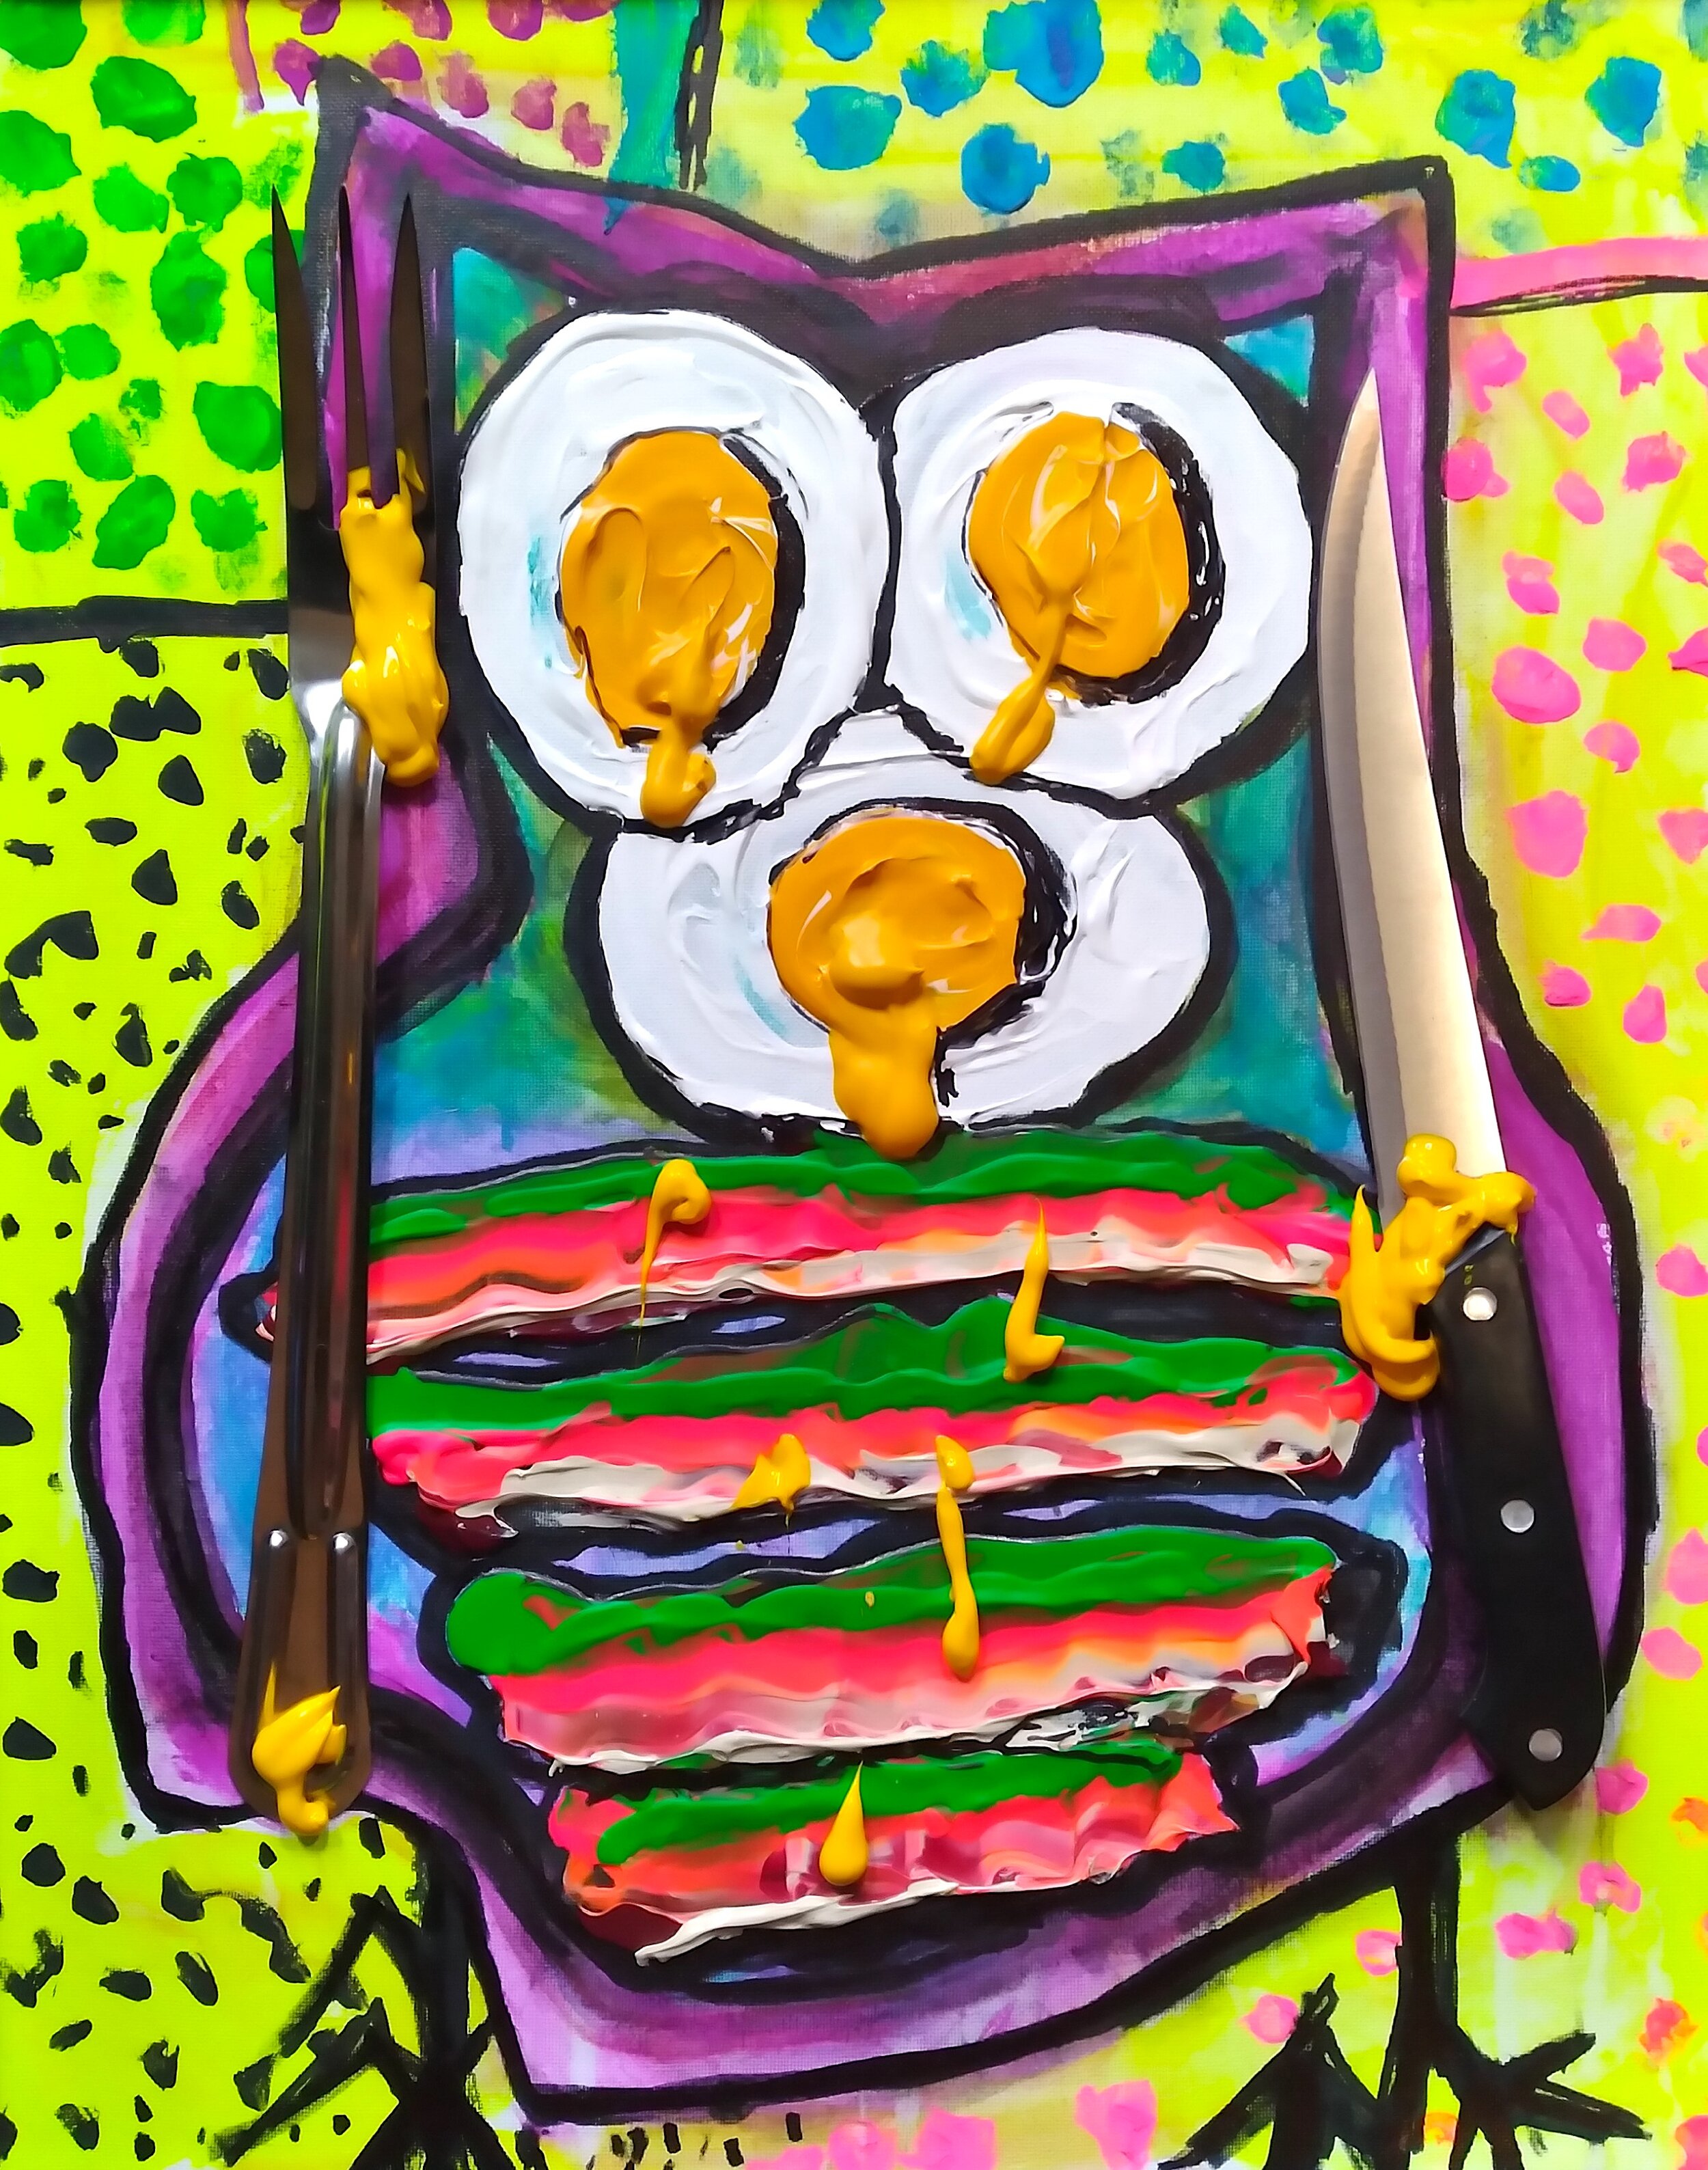 Night Owl (Bacon and Eggs) 2020. Oil, acrylic, fork, knife on canvas. 20" x 16".